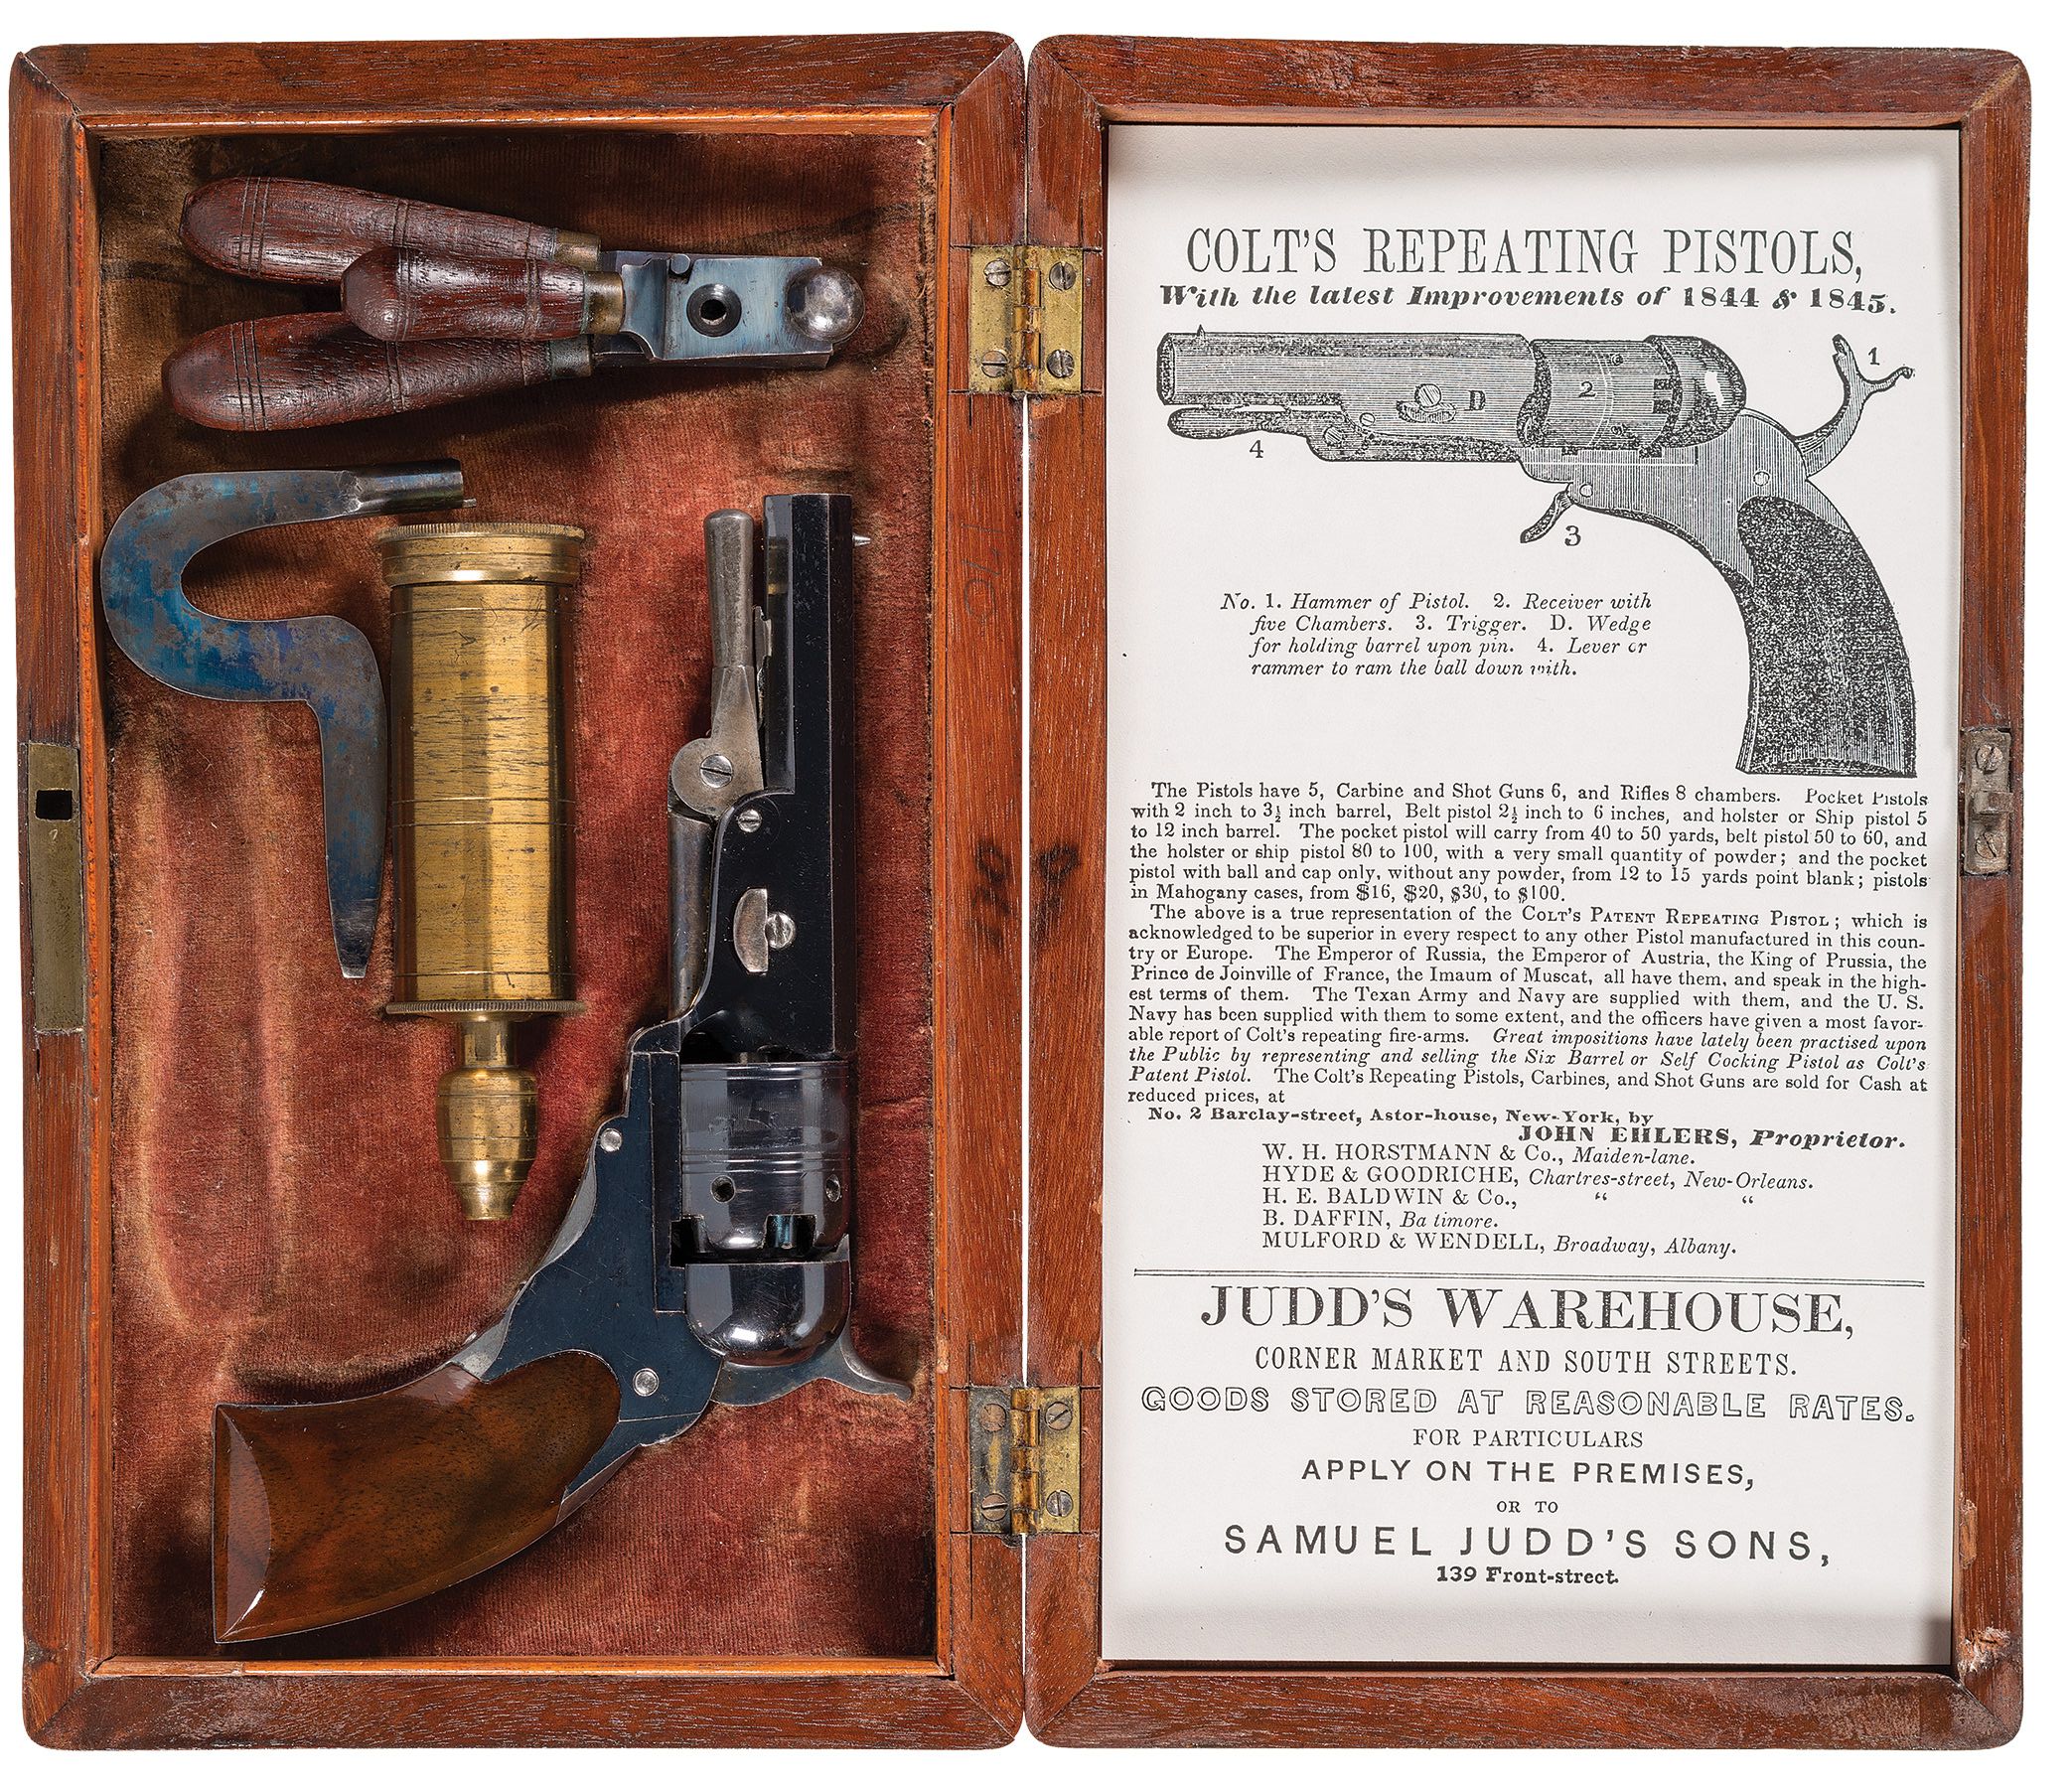 Cased Colt-Ehlers Pocket Model Paterson Revolver